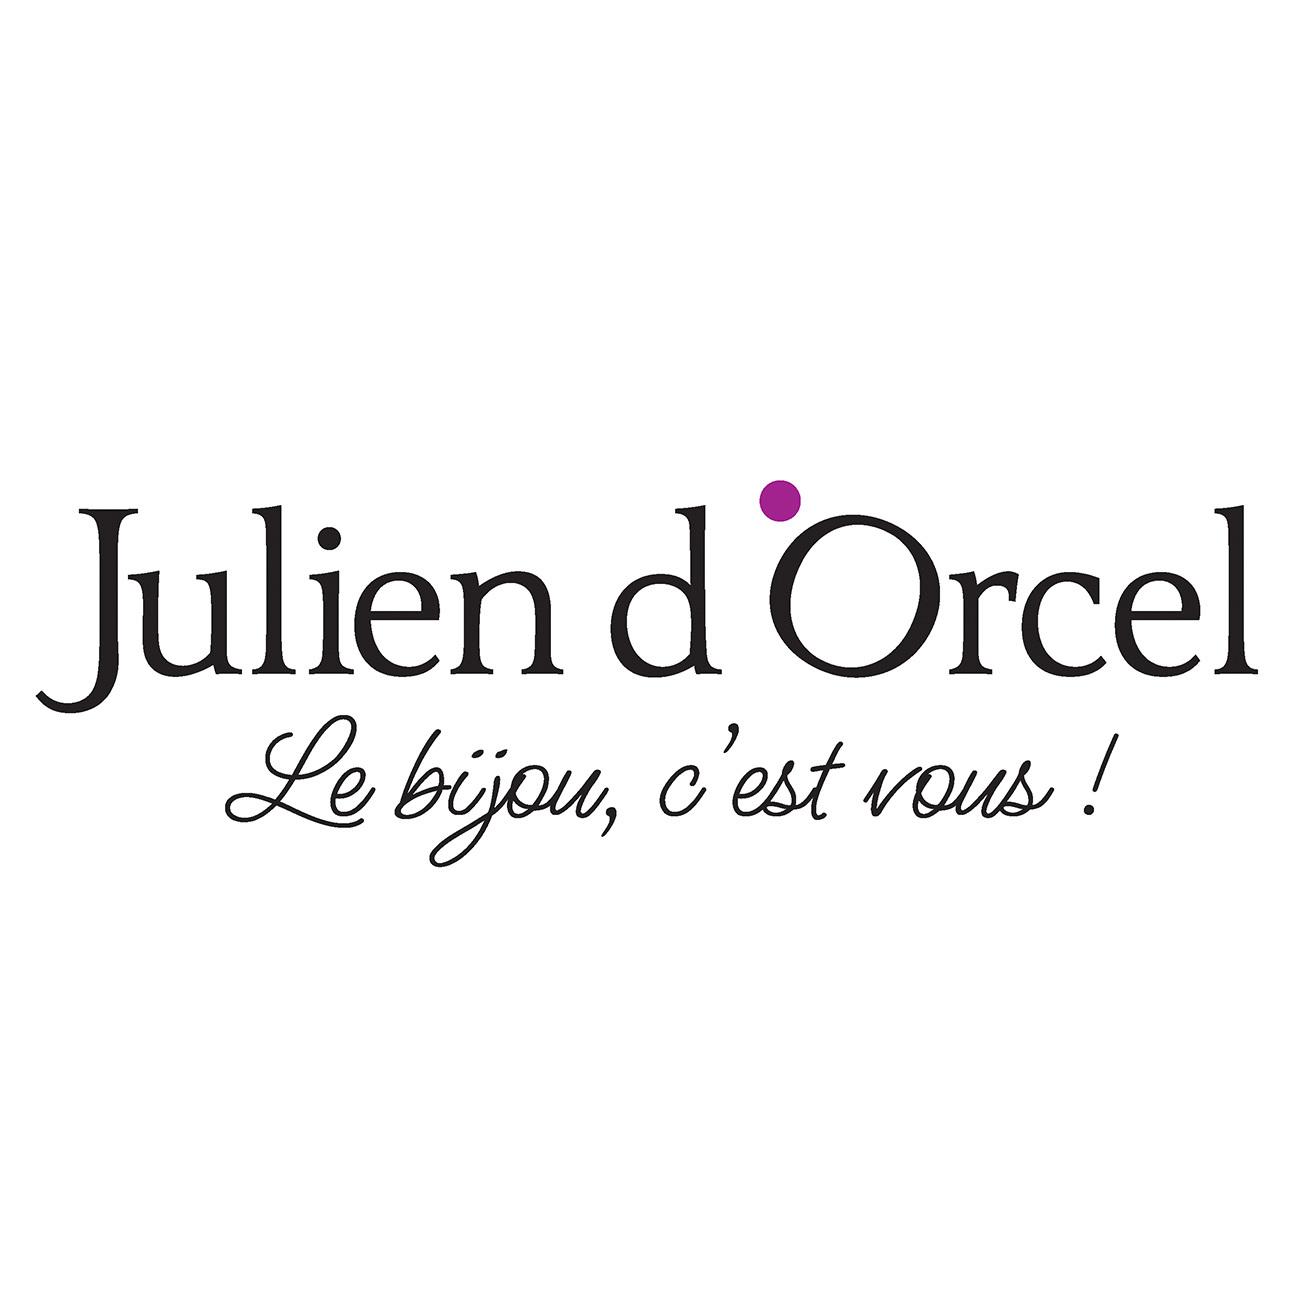 Julien D'orcel Provins